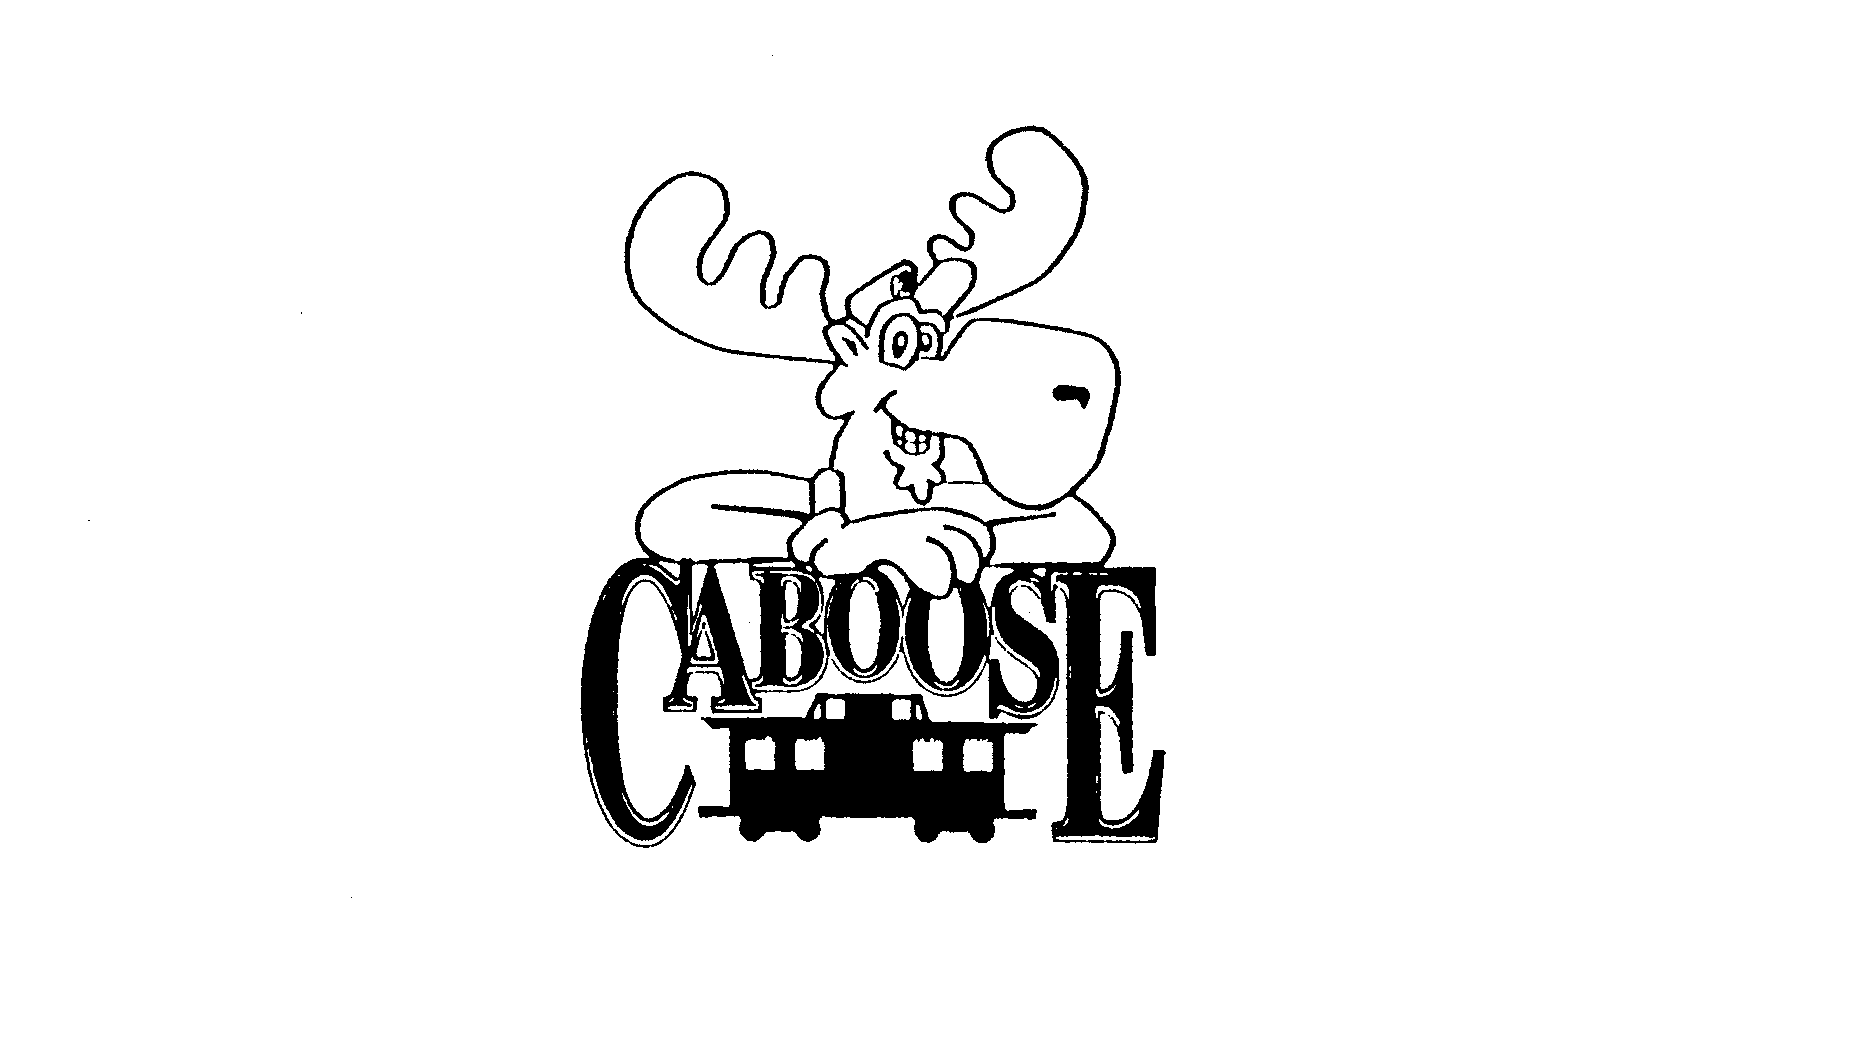 Trademark Logo CABOOSE